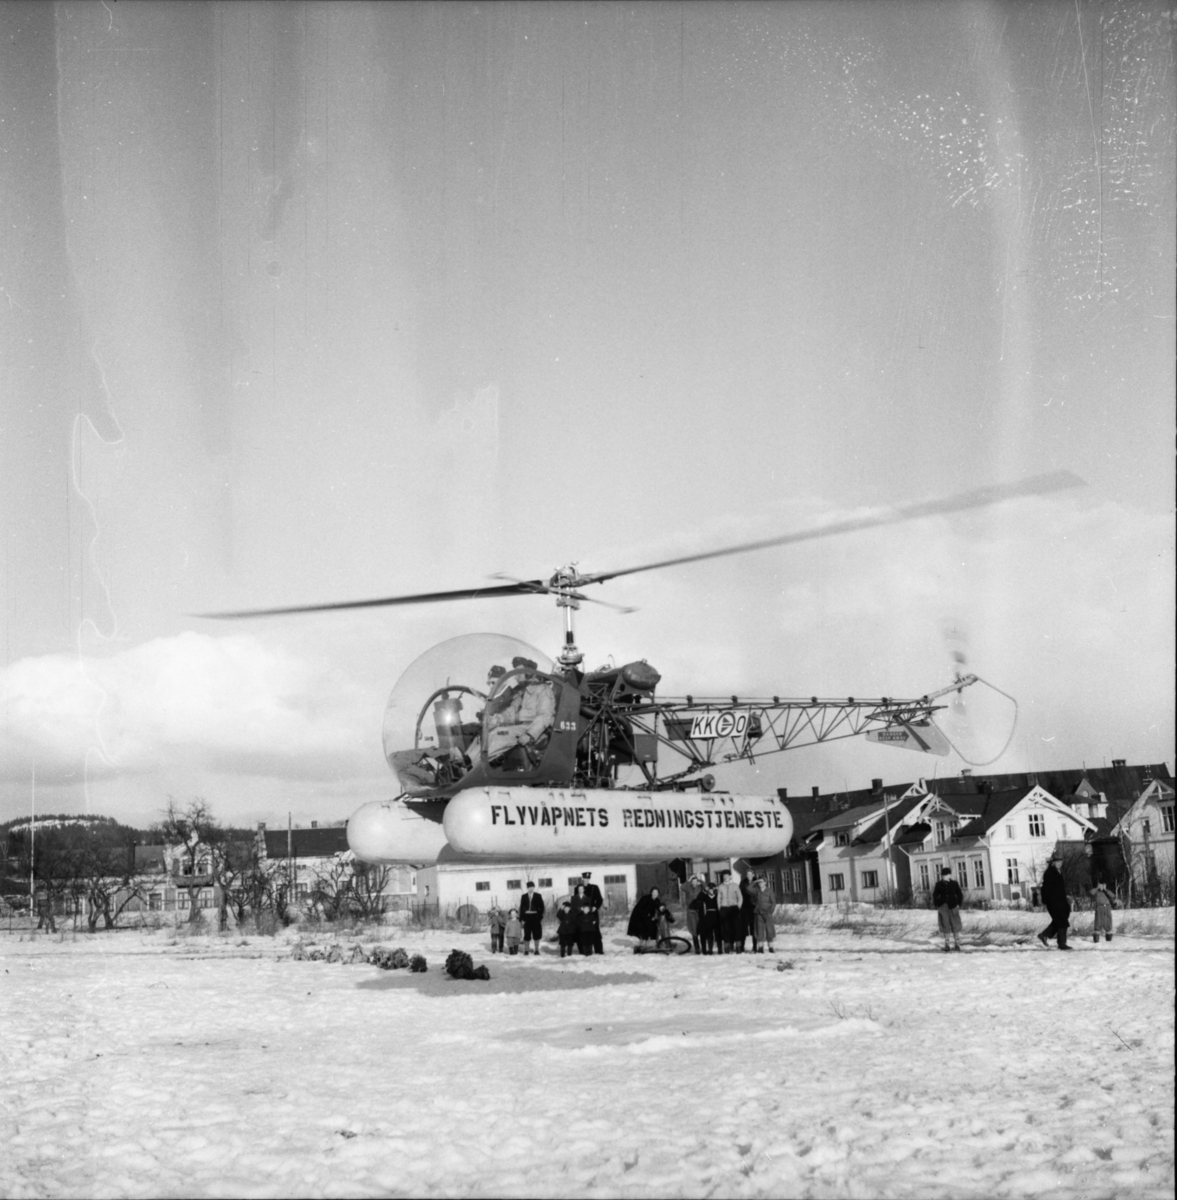 Vardens arkiv. "Flyvåpnets redningshelikopter på Prestejordet"  28.03.1954